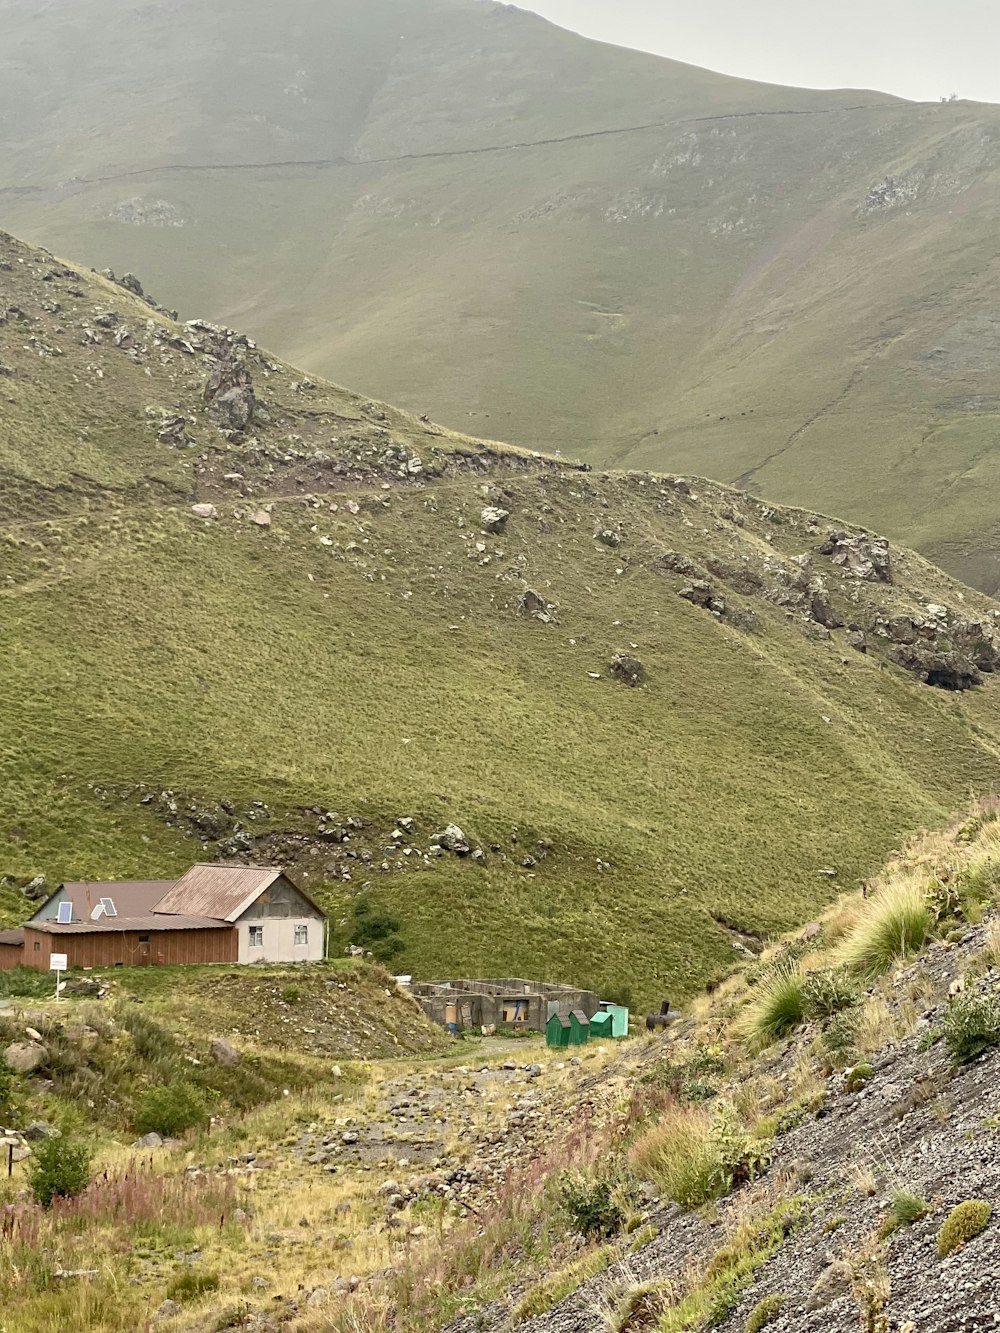 casa marrom e branca na colina coberta de grama verde